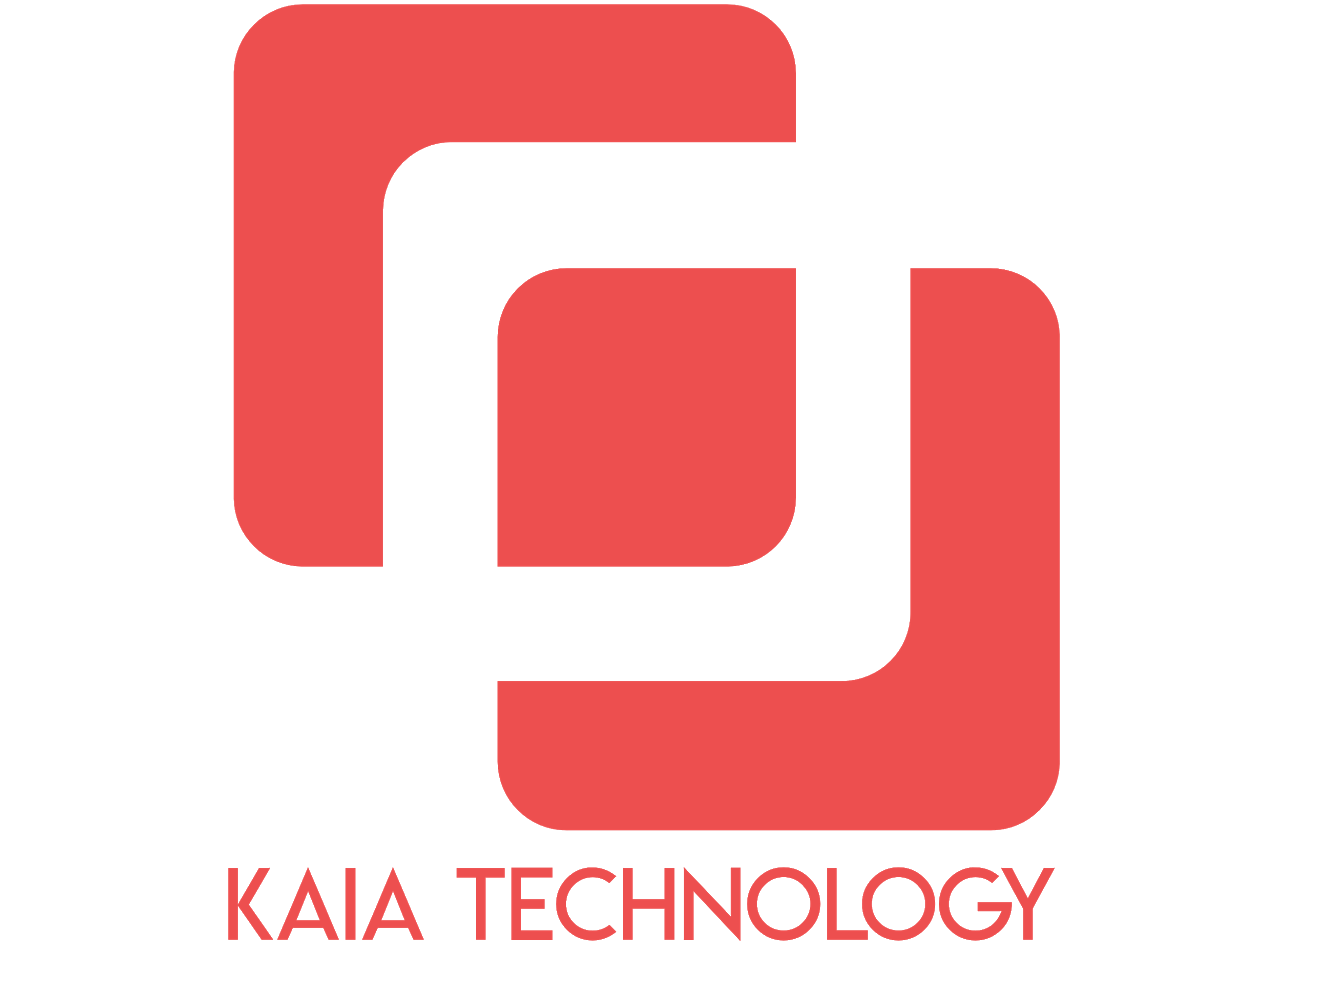 Kaia Technology